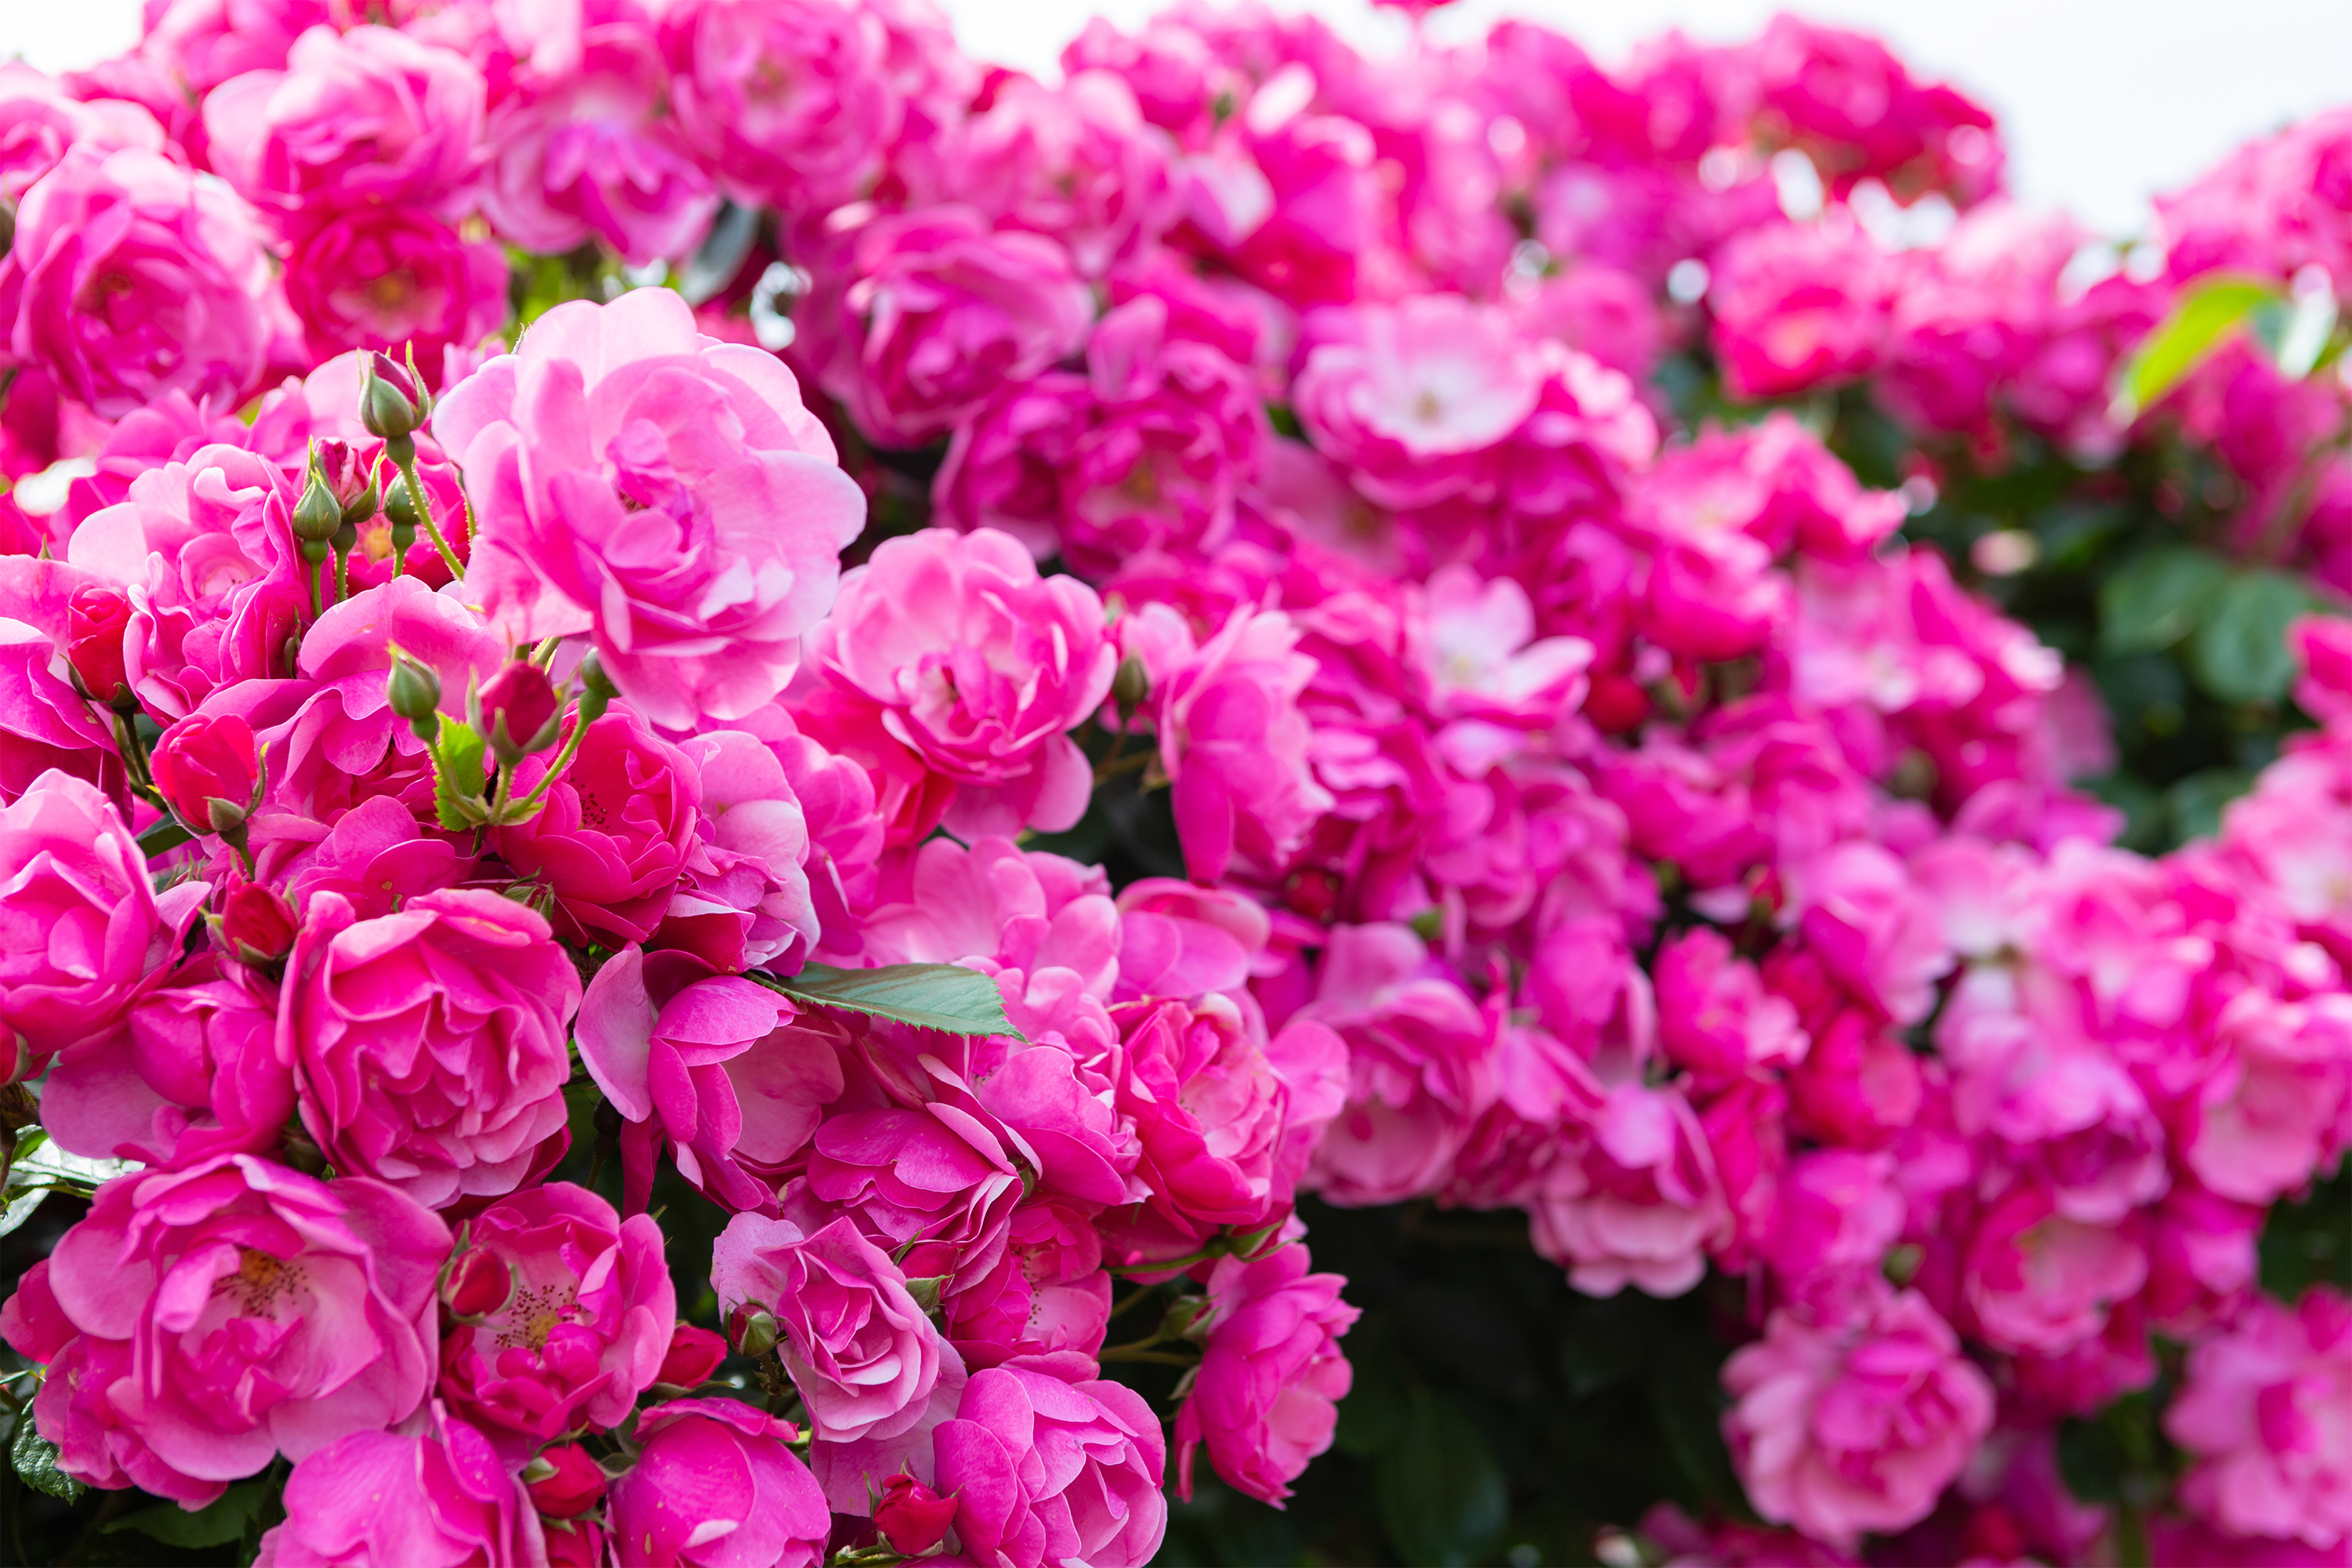 バラ 薔薇 ピンク色のアンジェラ02 無料の高画質フリー写真素材 イメージズラボ